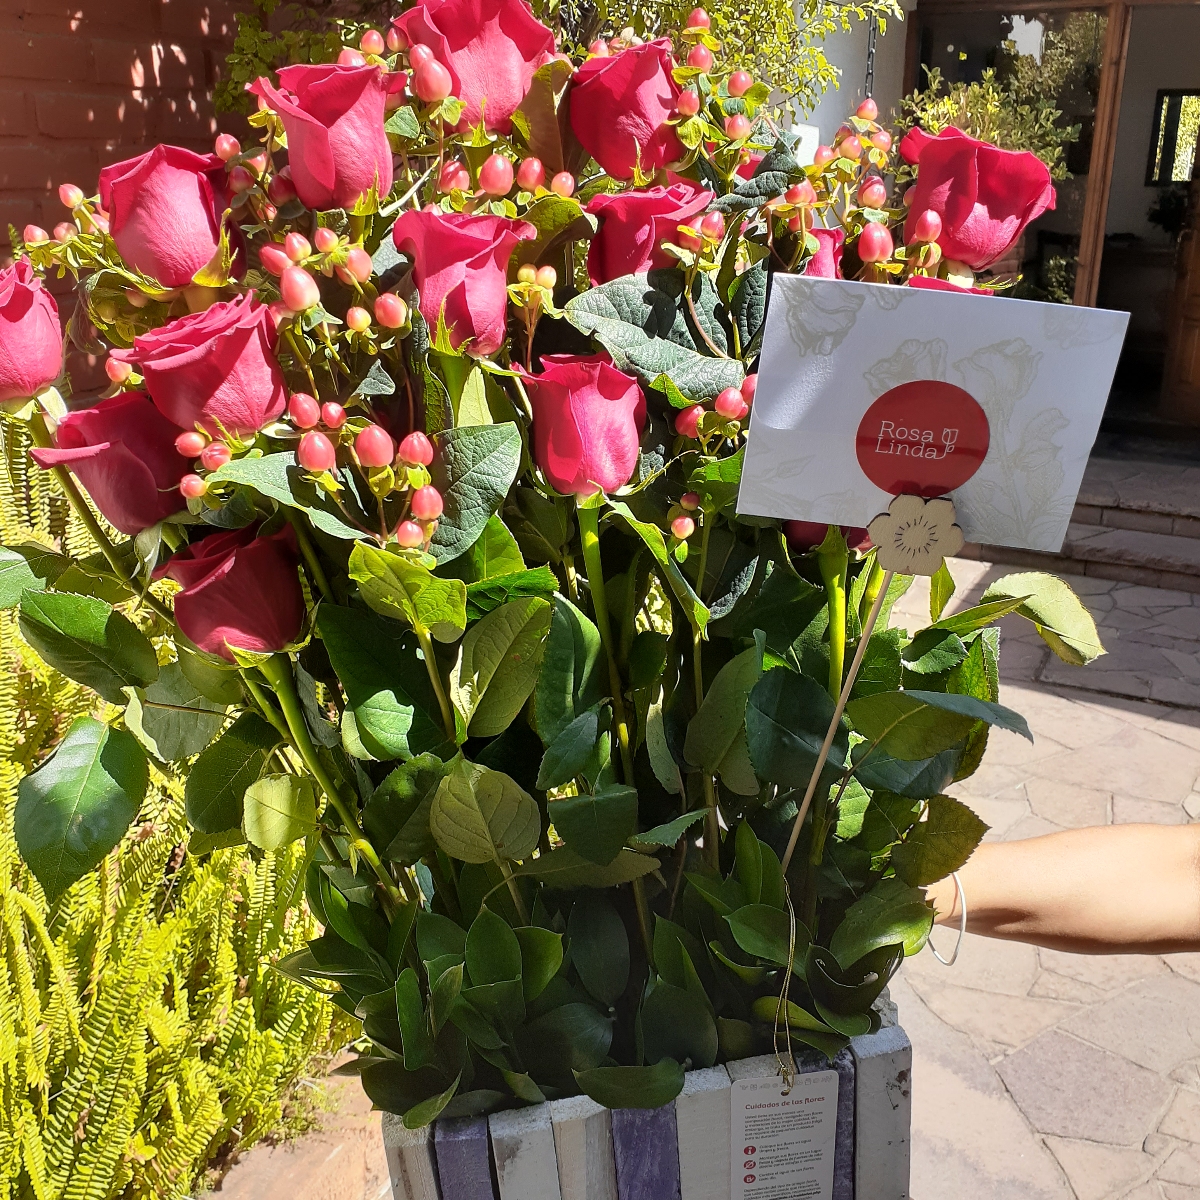 Jardín de Rosas Rojas - Arreglo floral con 16 rosas rojas e hypericum rojo - Pedido 247844